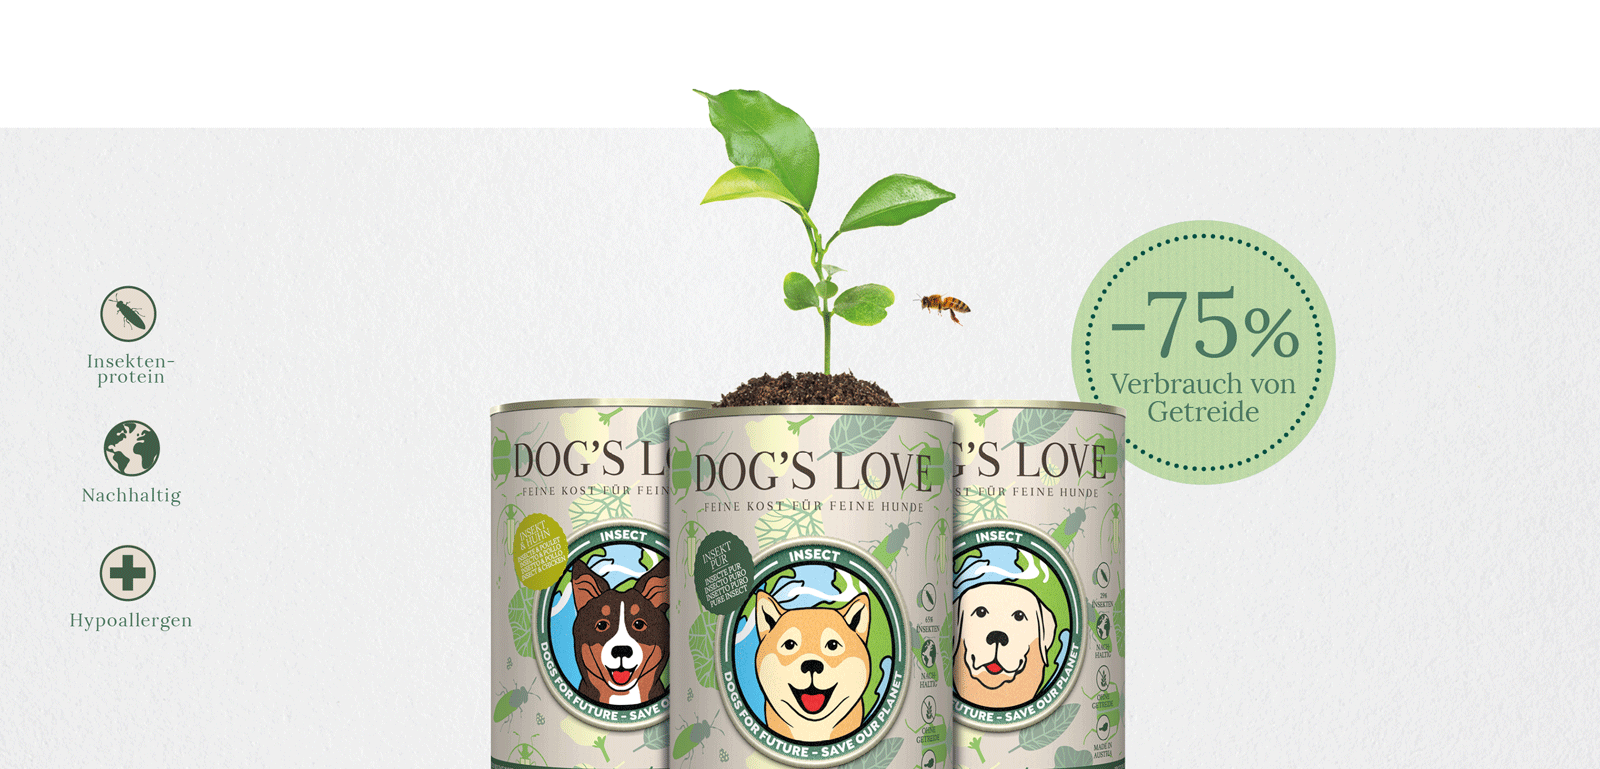 Banner mit allen 3 DOG'S LOVE Insect Sorten, der folgende Informationen engält: Insektenprotein, Nachhaltig & Hypoallergen sowie die Information -75% weniger Wasser